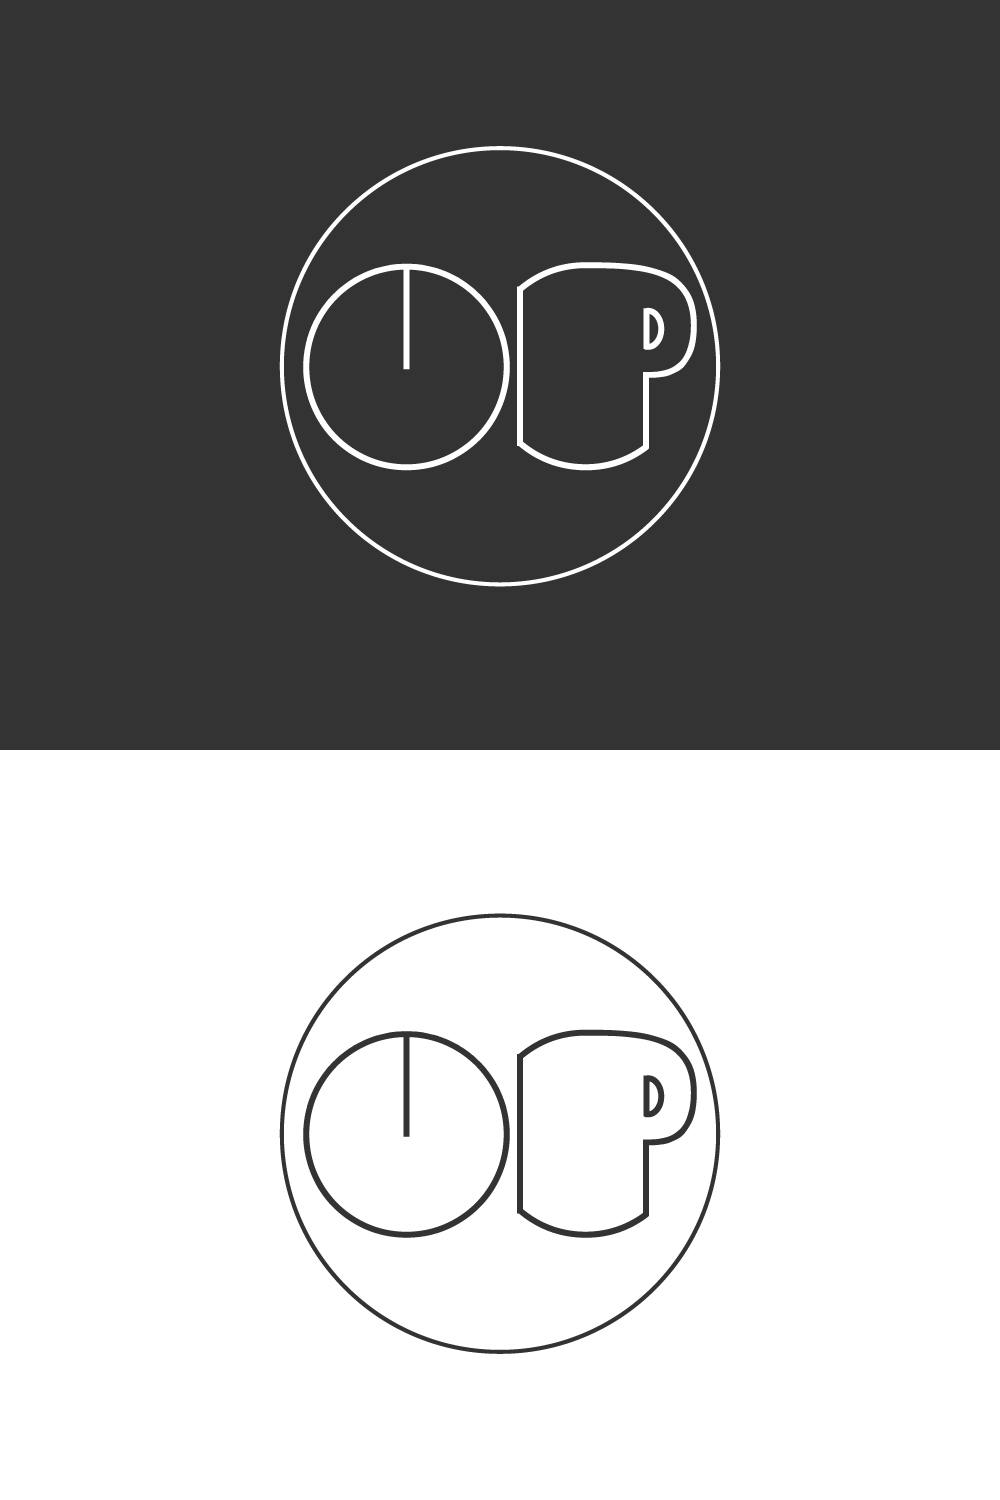 ub letter logo pinterest preview image.